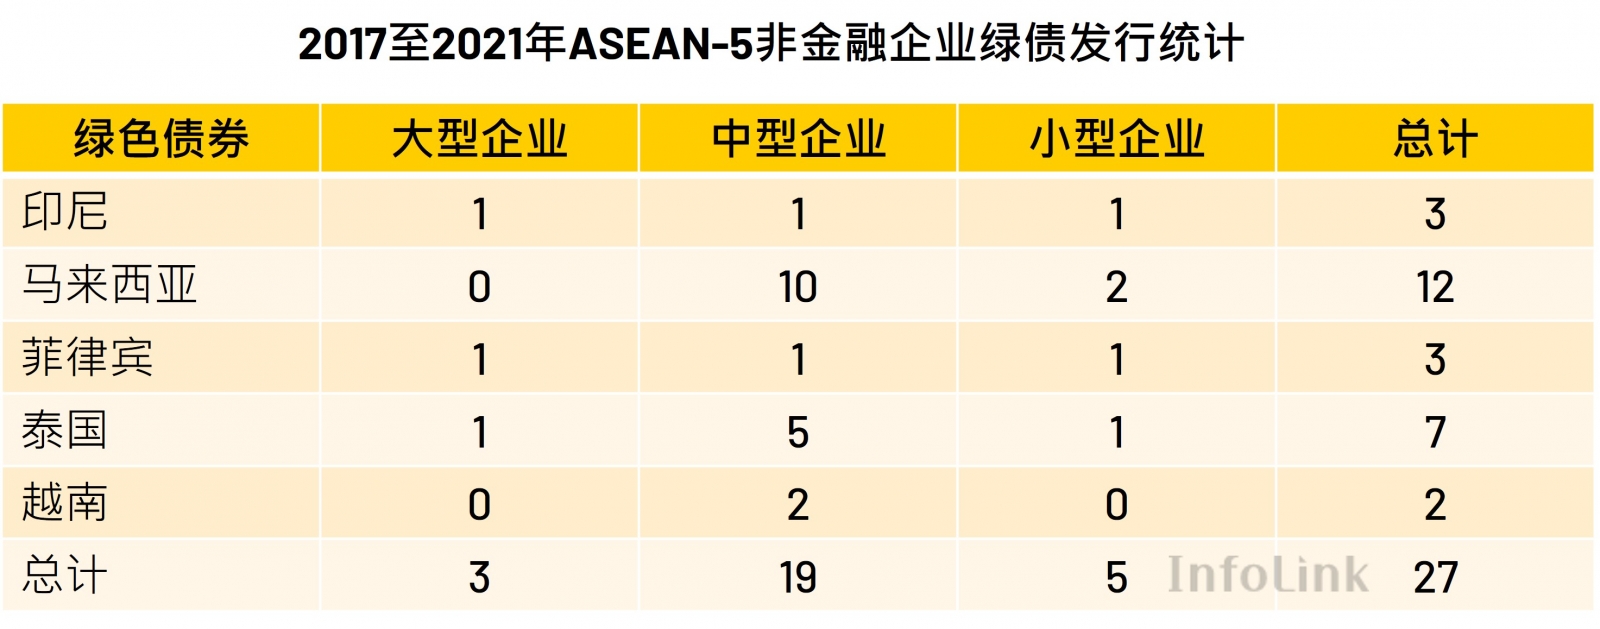 2017至2021年ASEAN-5非金融企业绿债发行统计